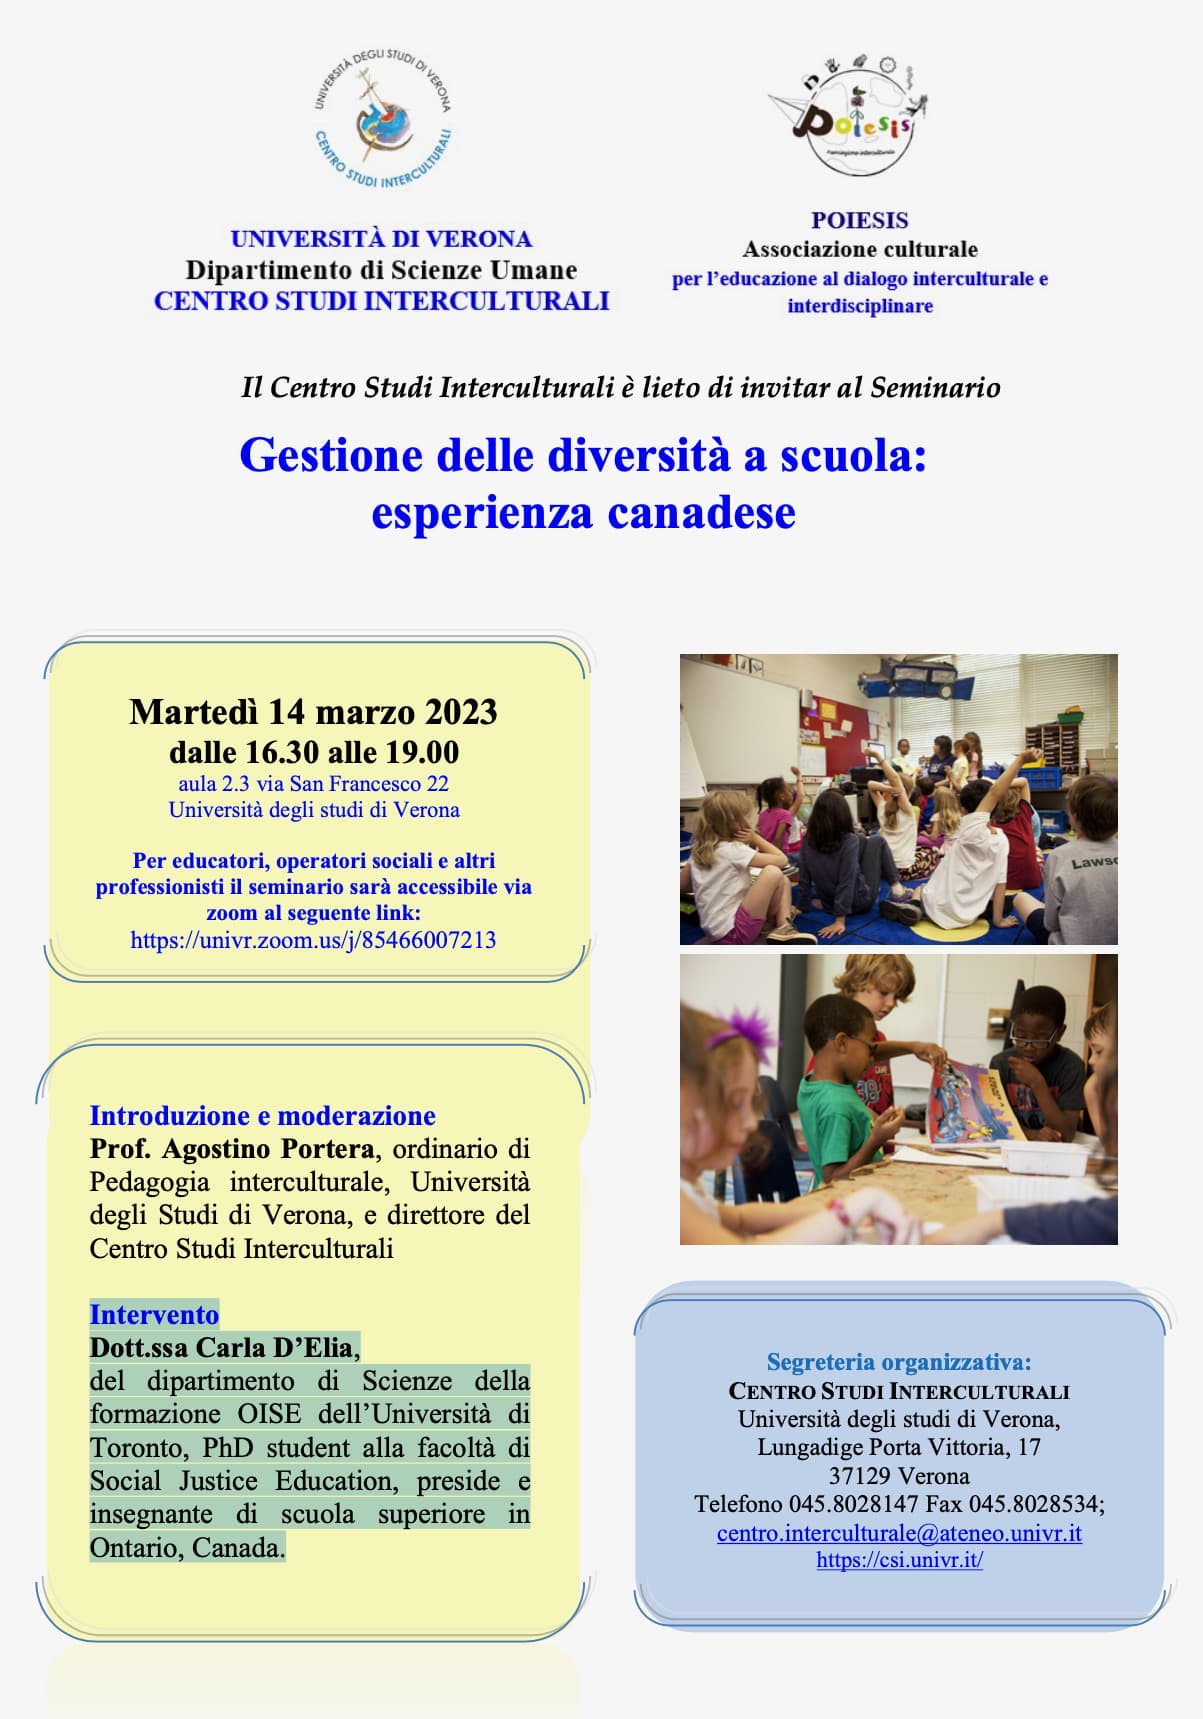 Gestione della Diversità a Scuola - Esperienza Canadese - Centro Studi Interculturali - UniVerona-min